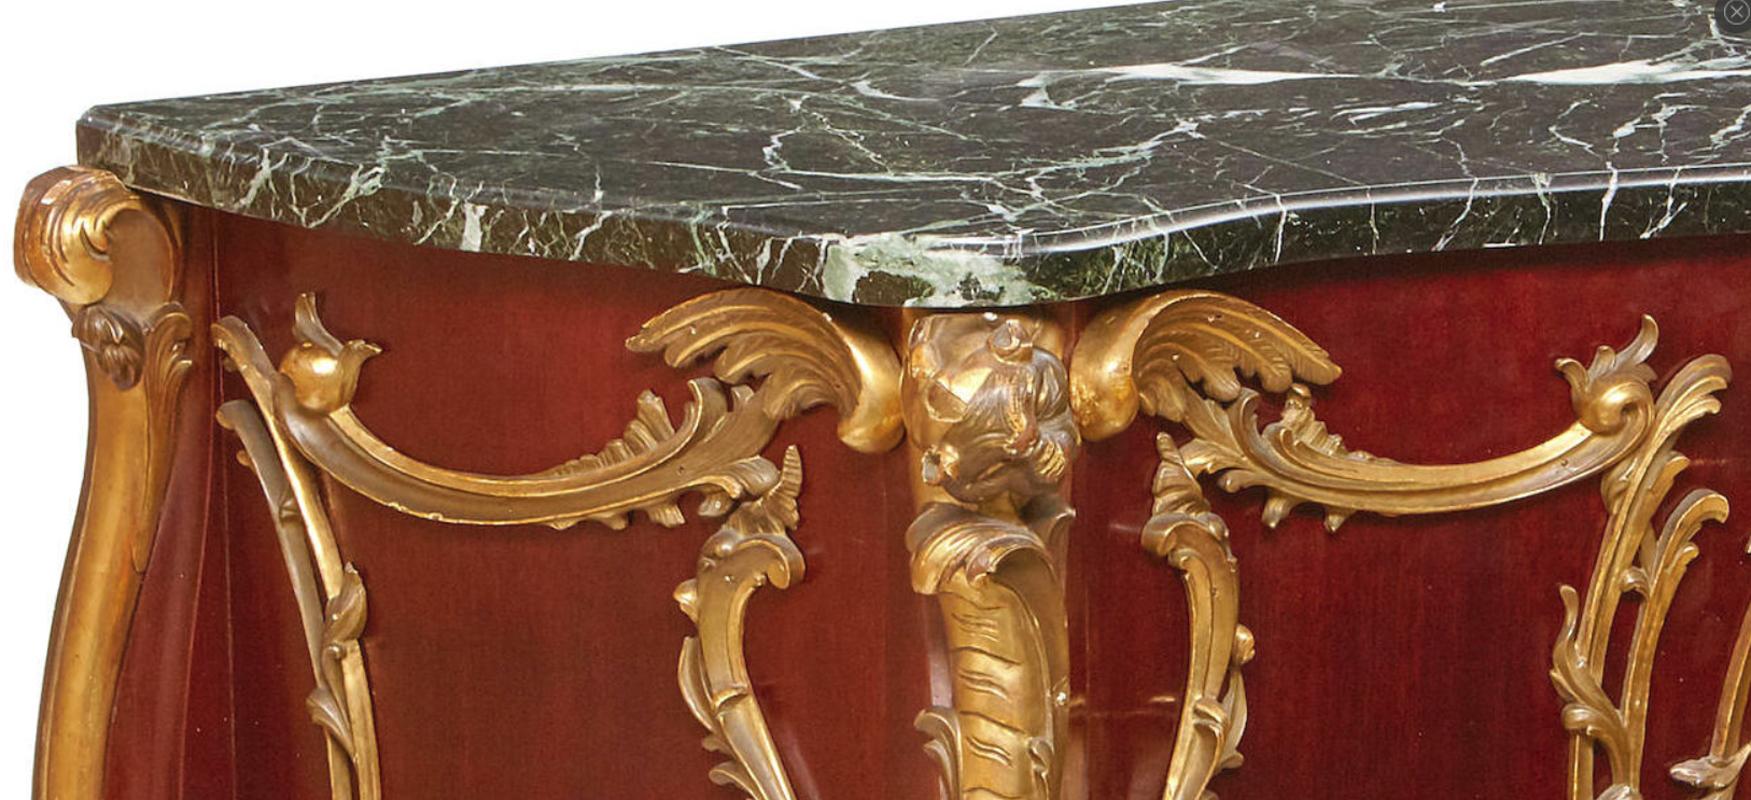 Einzigartige und übergroße französische Konsole im Louis XV-Stil aus geschnitztem, vergoldetem Obstholz in Kommodenform mit Marmorplatte.
Ende des 19. bis Anfang des 20. Jh. Möglicherweise Italienisch.
Die schöne serpentinenförmige Platte aus grünem